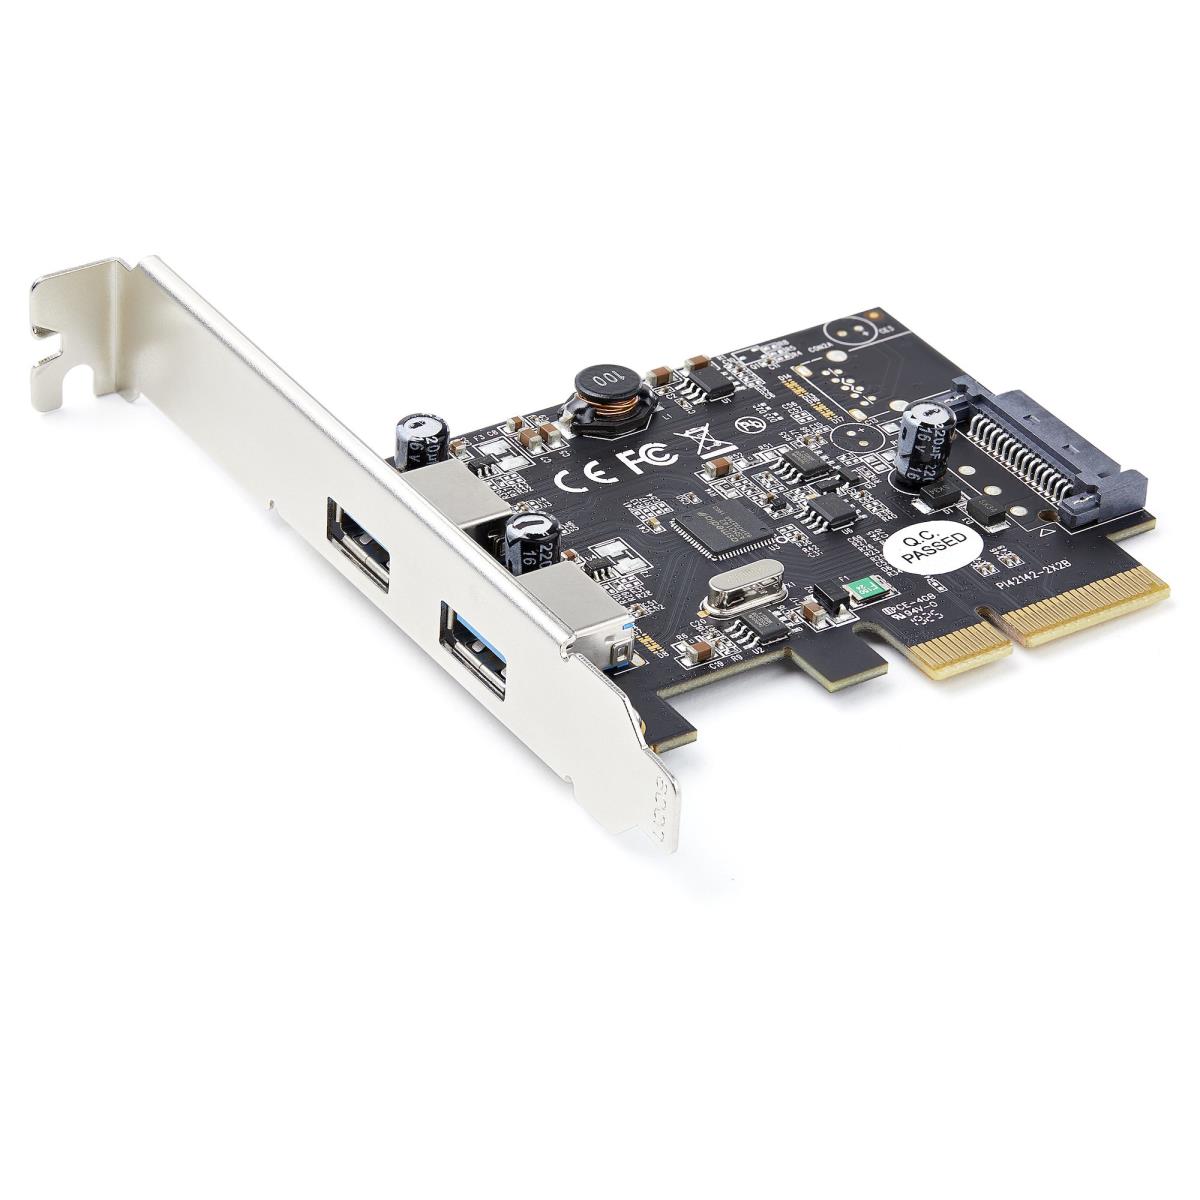 StarTech USB 3.2 Gen 2x2 PCIe Card - USB-C 20Gbps - Carte réseau